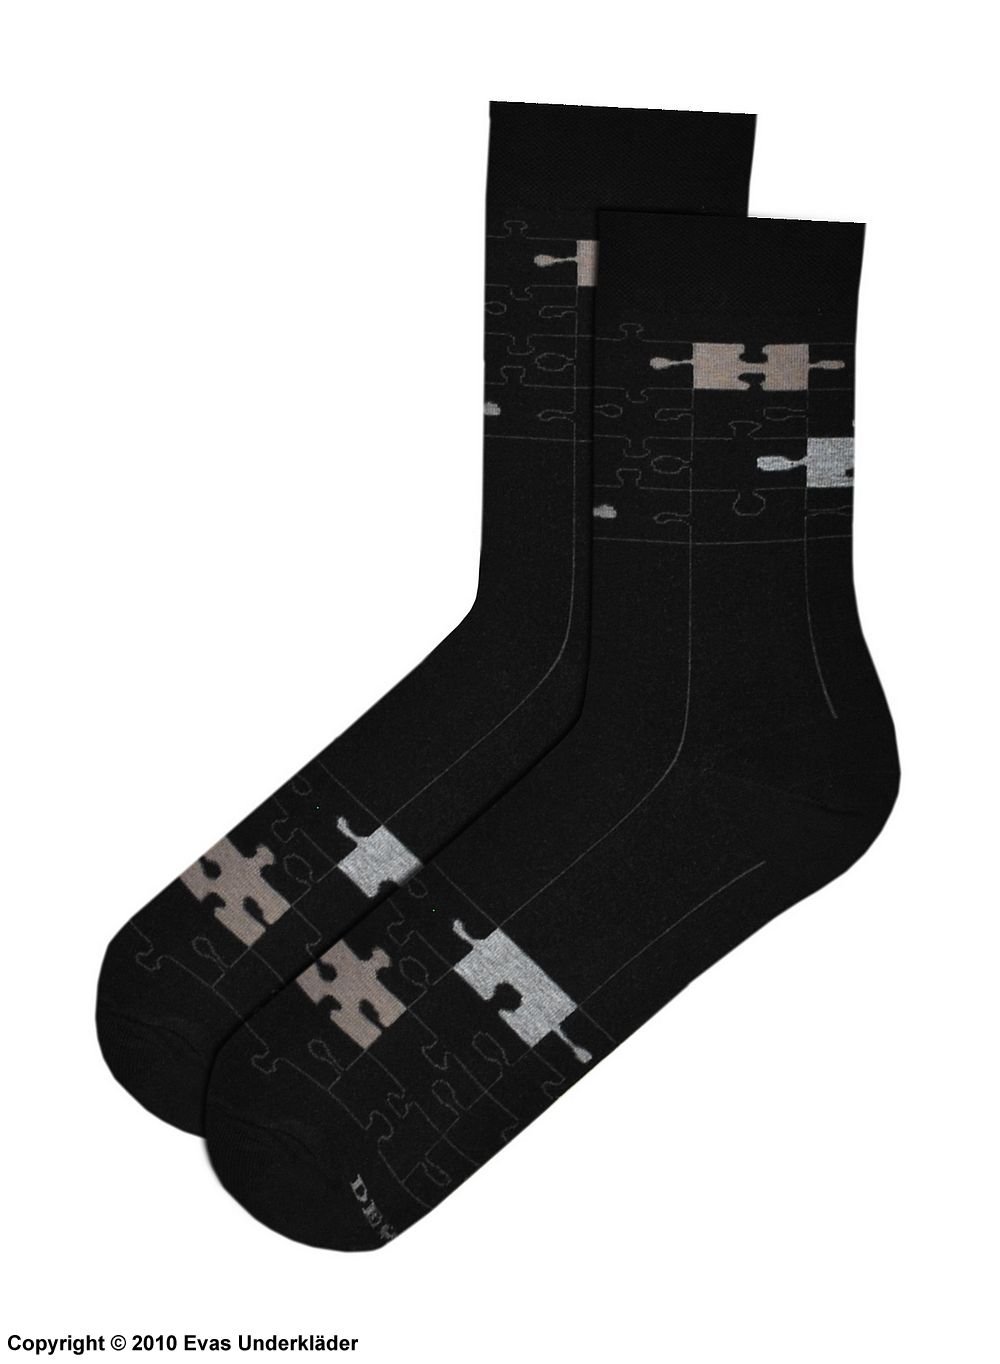 Men's socks, high quality cotton, puzzle pieces